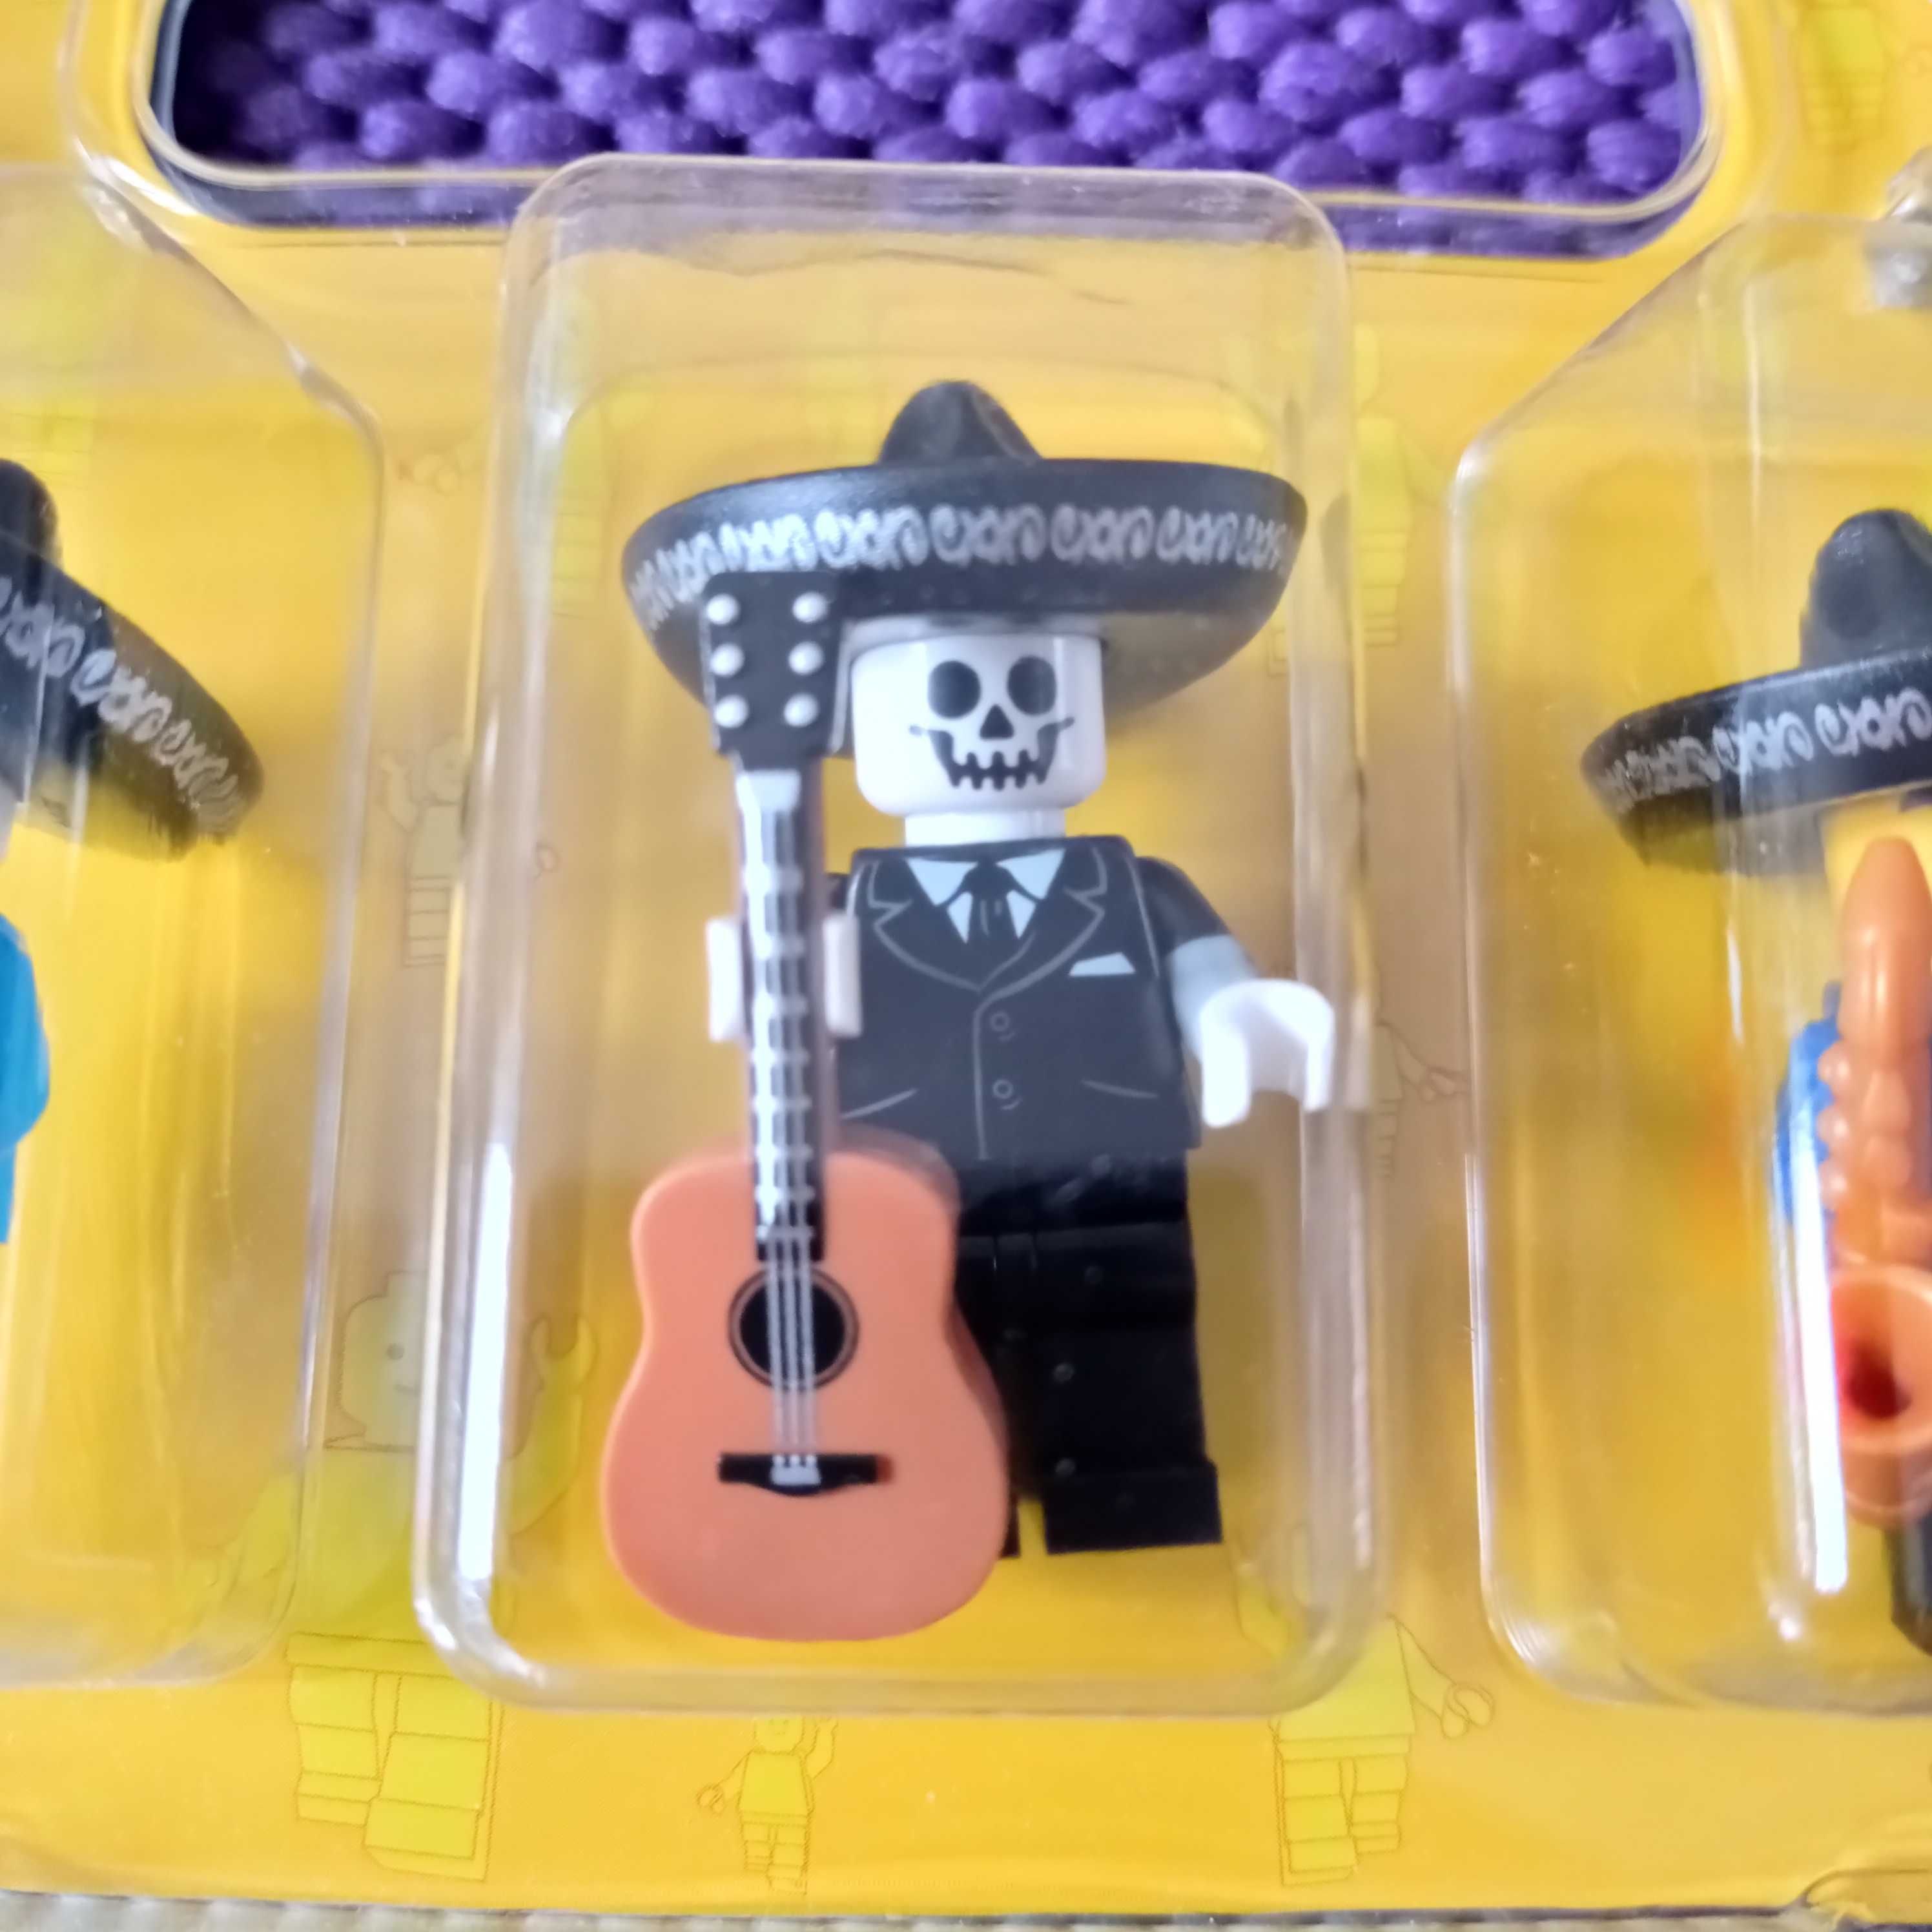 LEGO figurki mariachi ludziki blister minifigures kolekcjonerskie